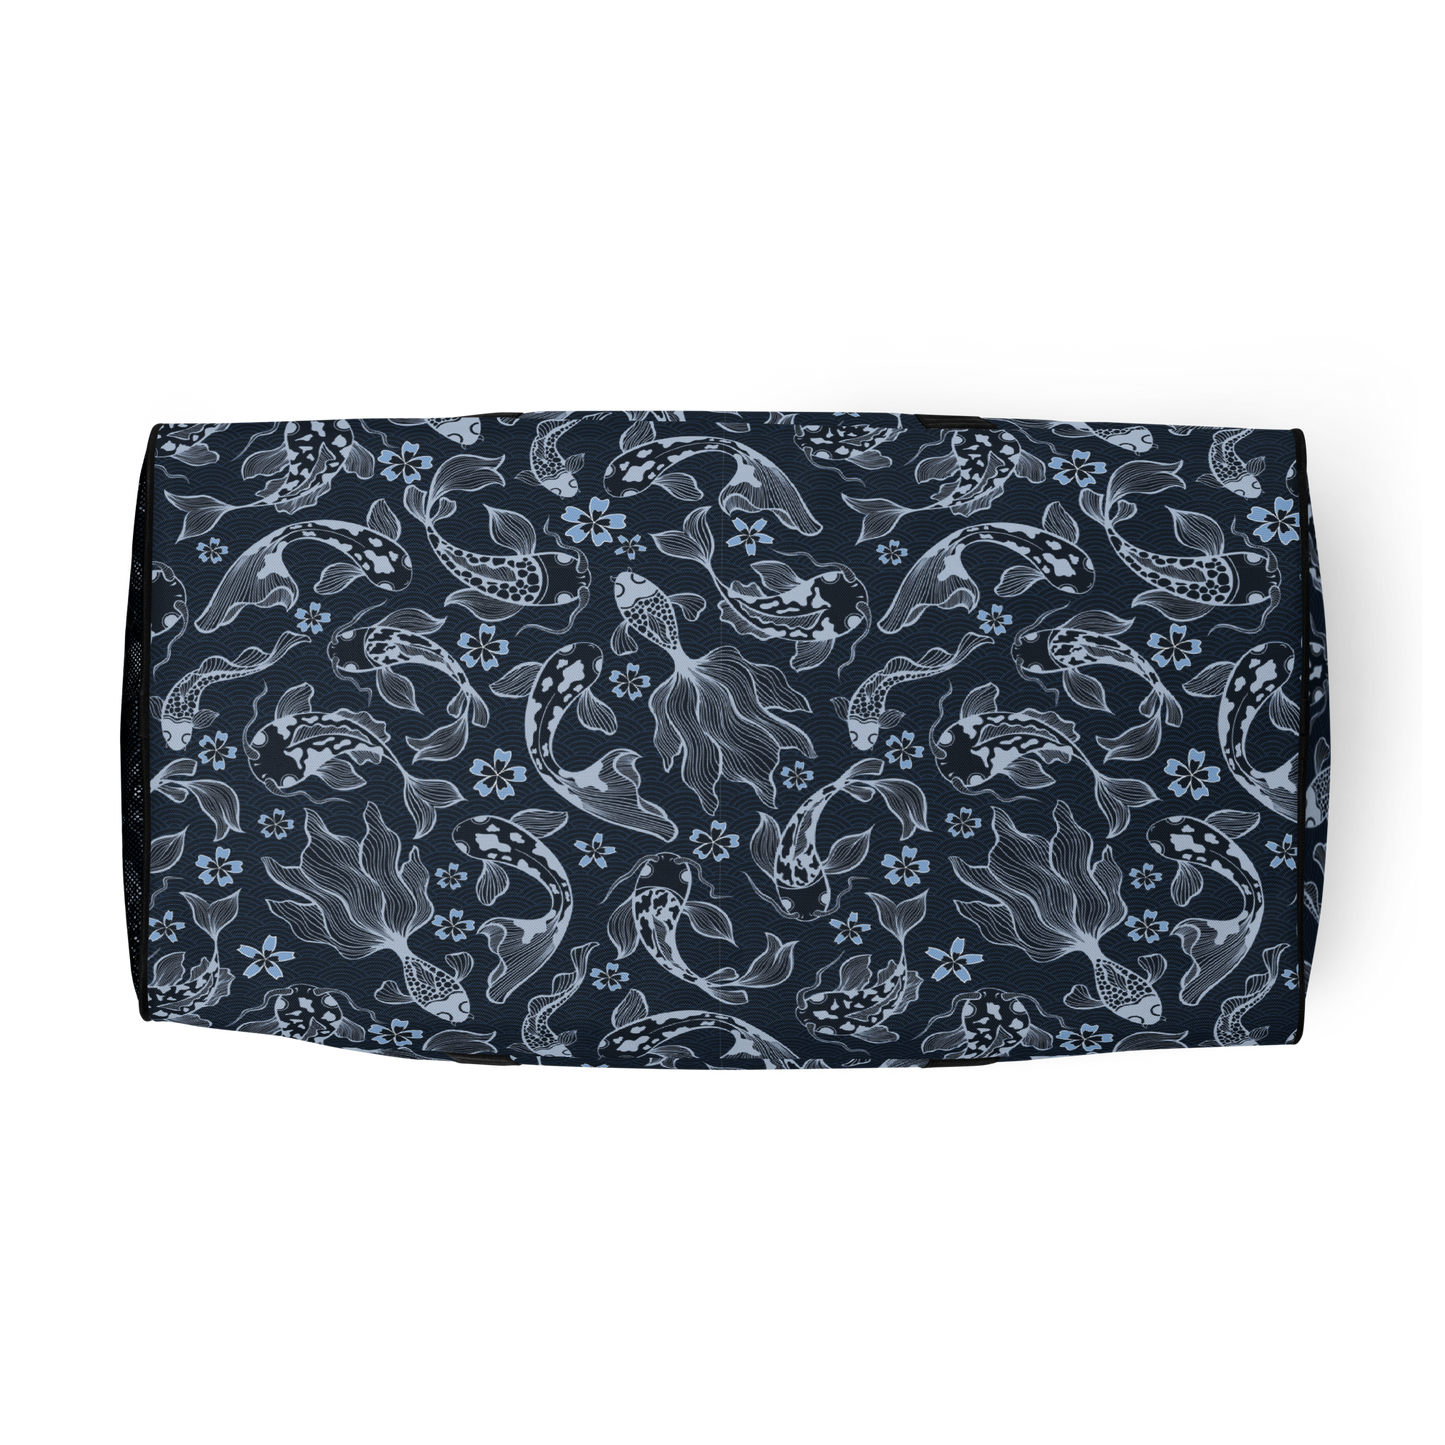 Blue Koi Duffle bag